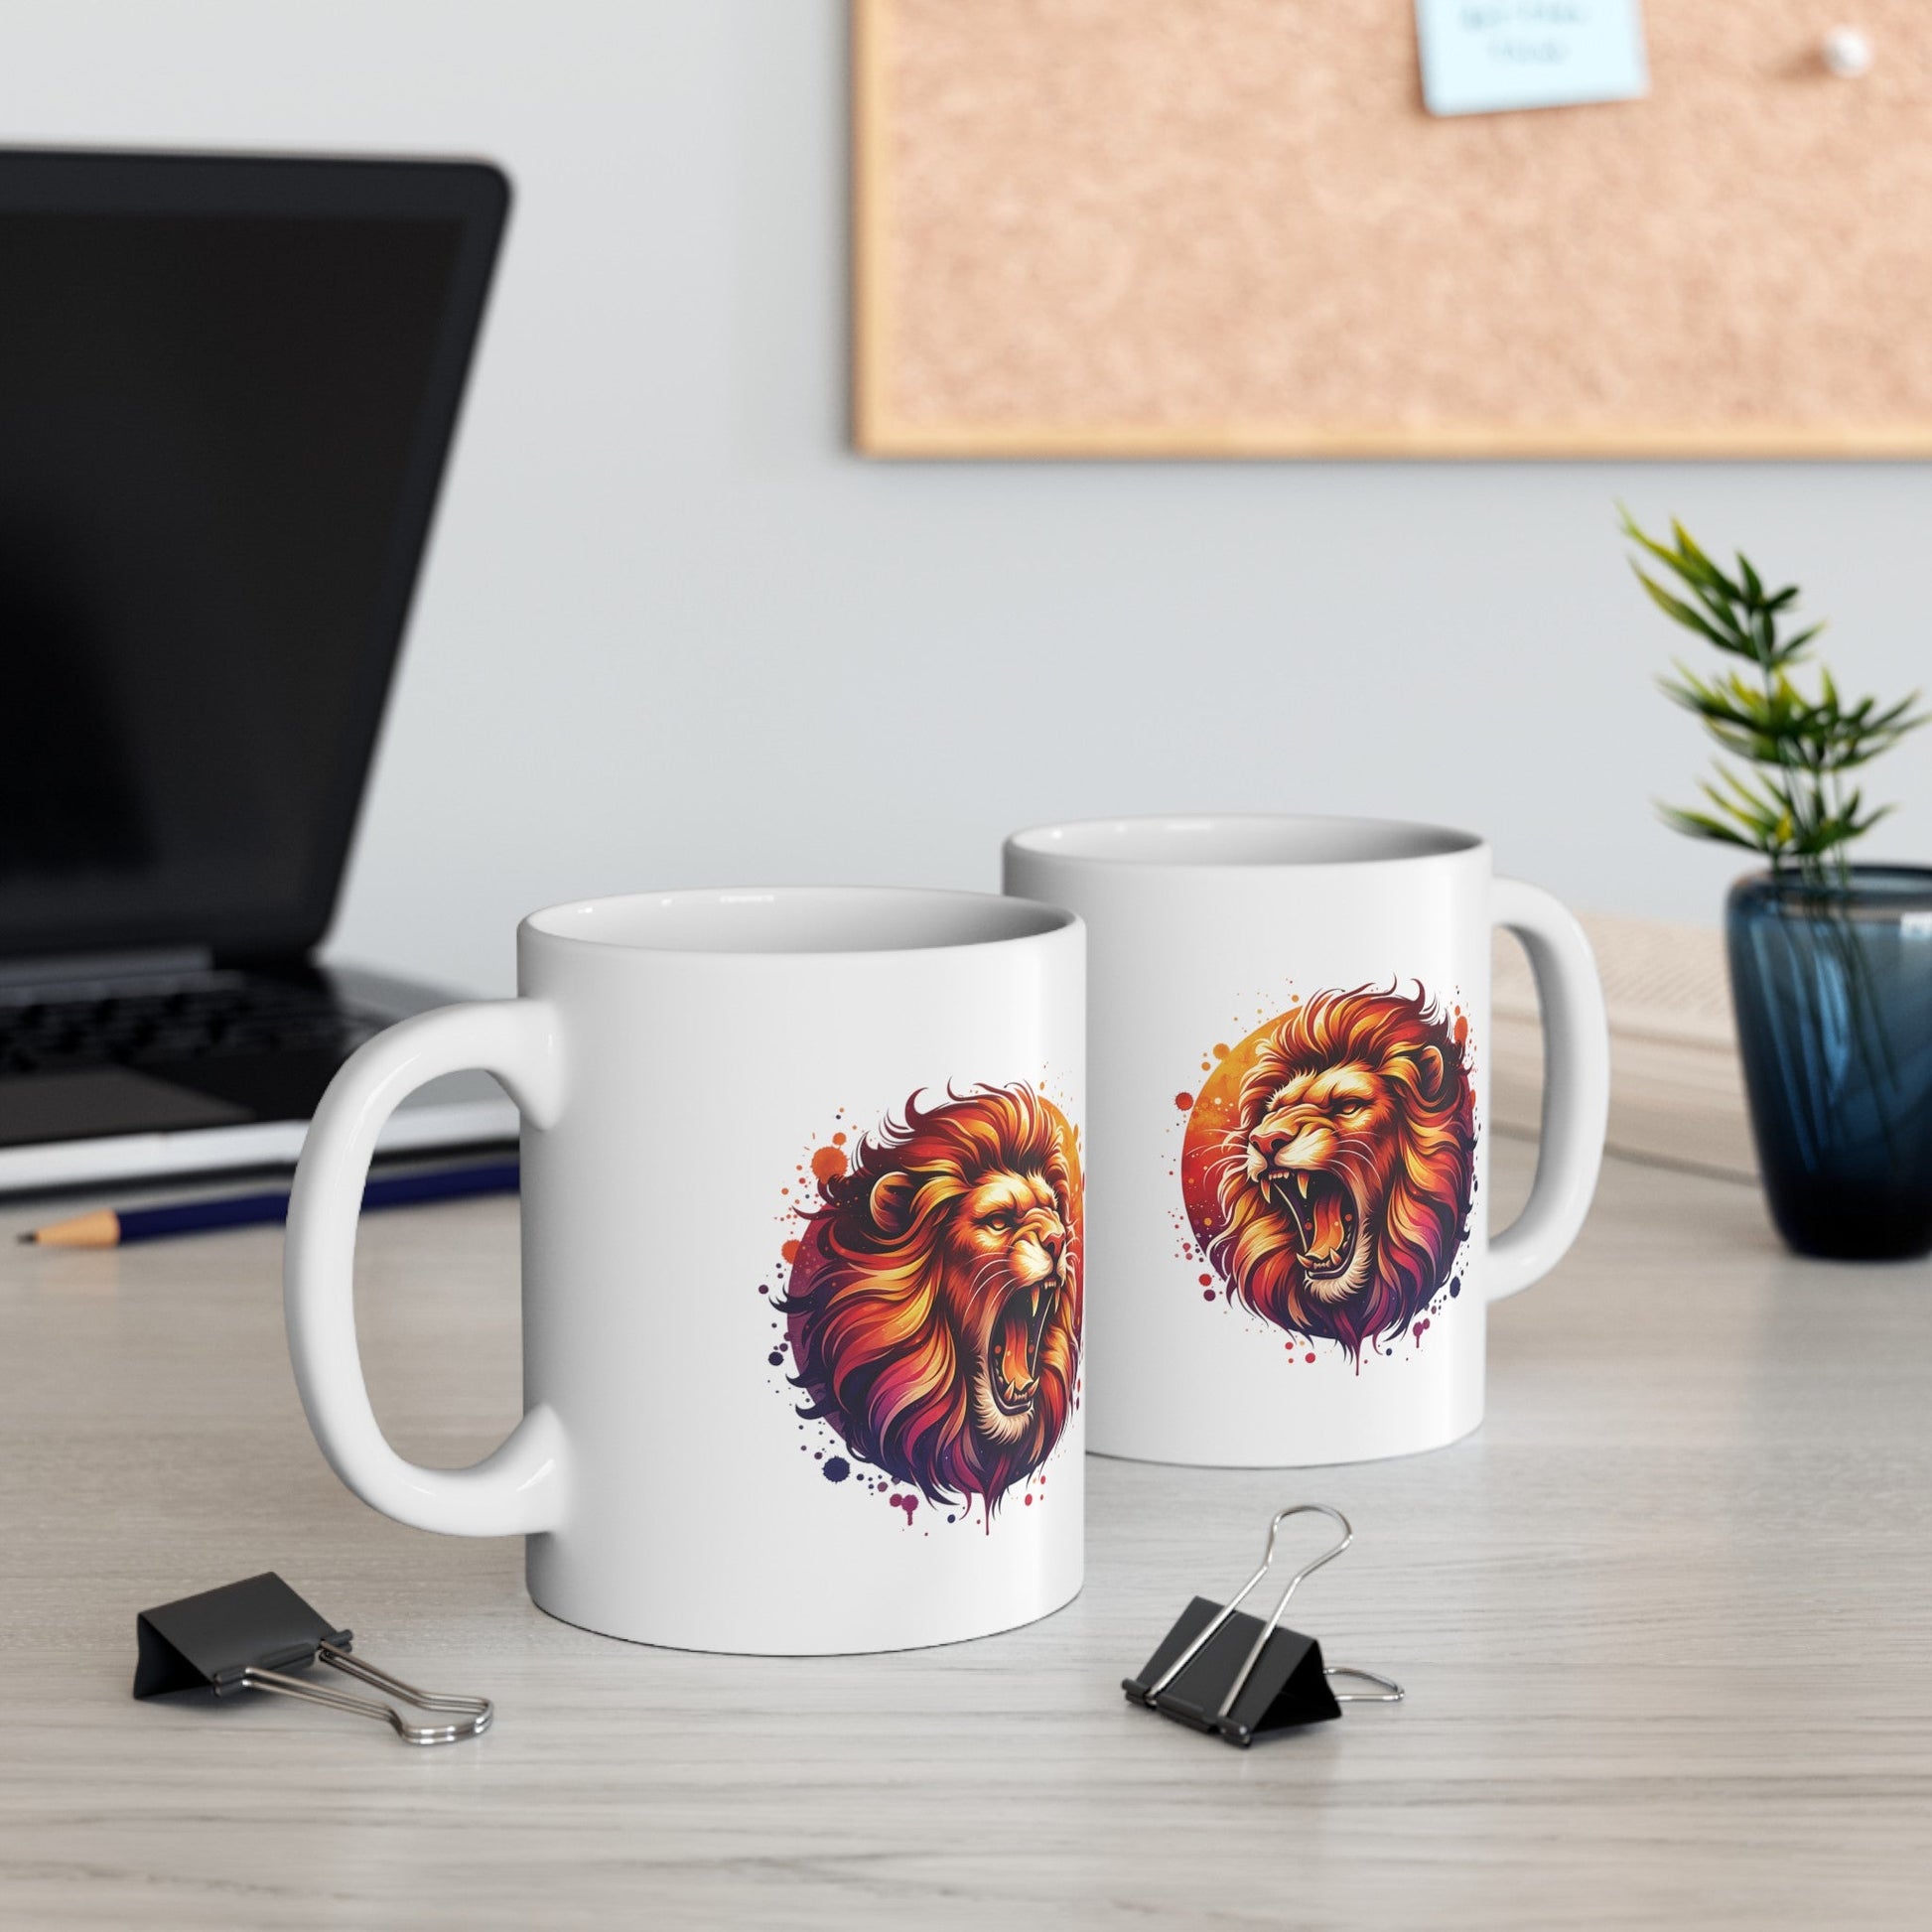 Watercolor Roaring Lion Mug | Mug for Lion Lovers | Leo | Lion Cup | Animal Mug | Gift For Animal Lovers | Ceramic Mug | Coffee Cup | Birthday Gift - Moikas